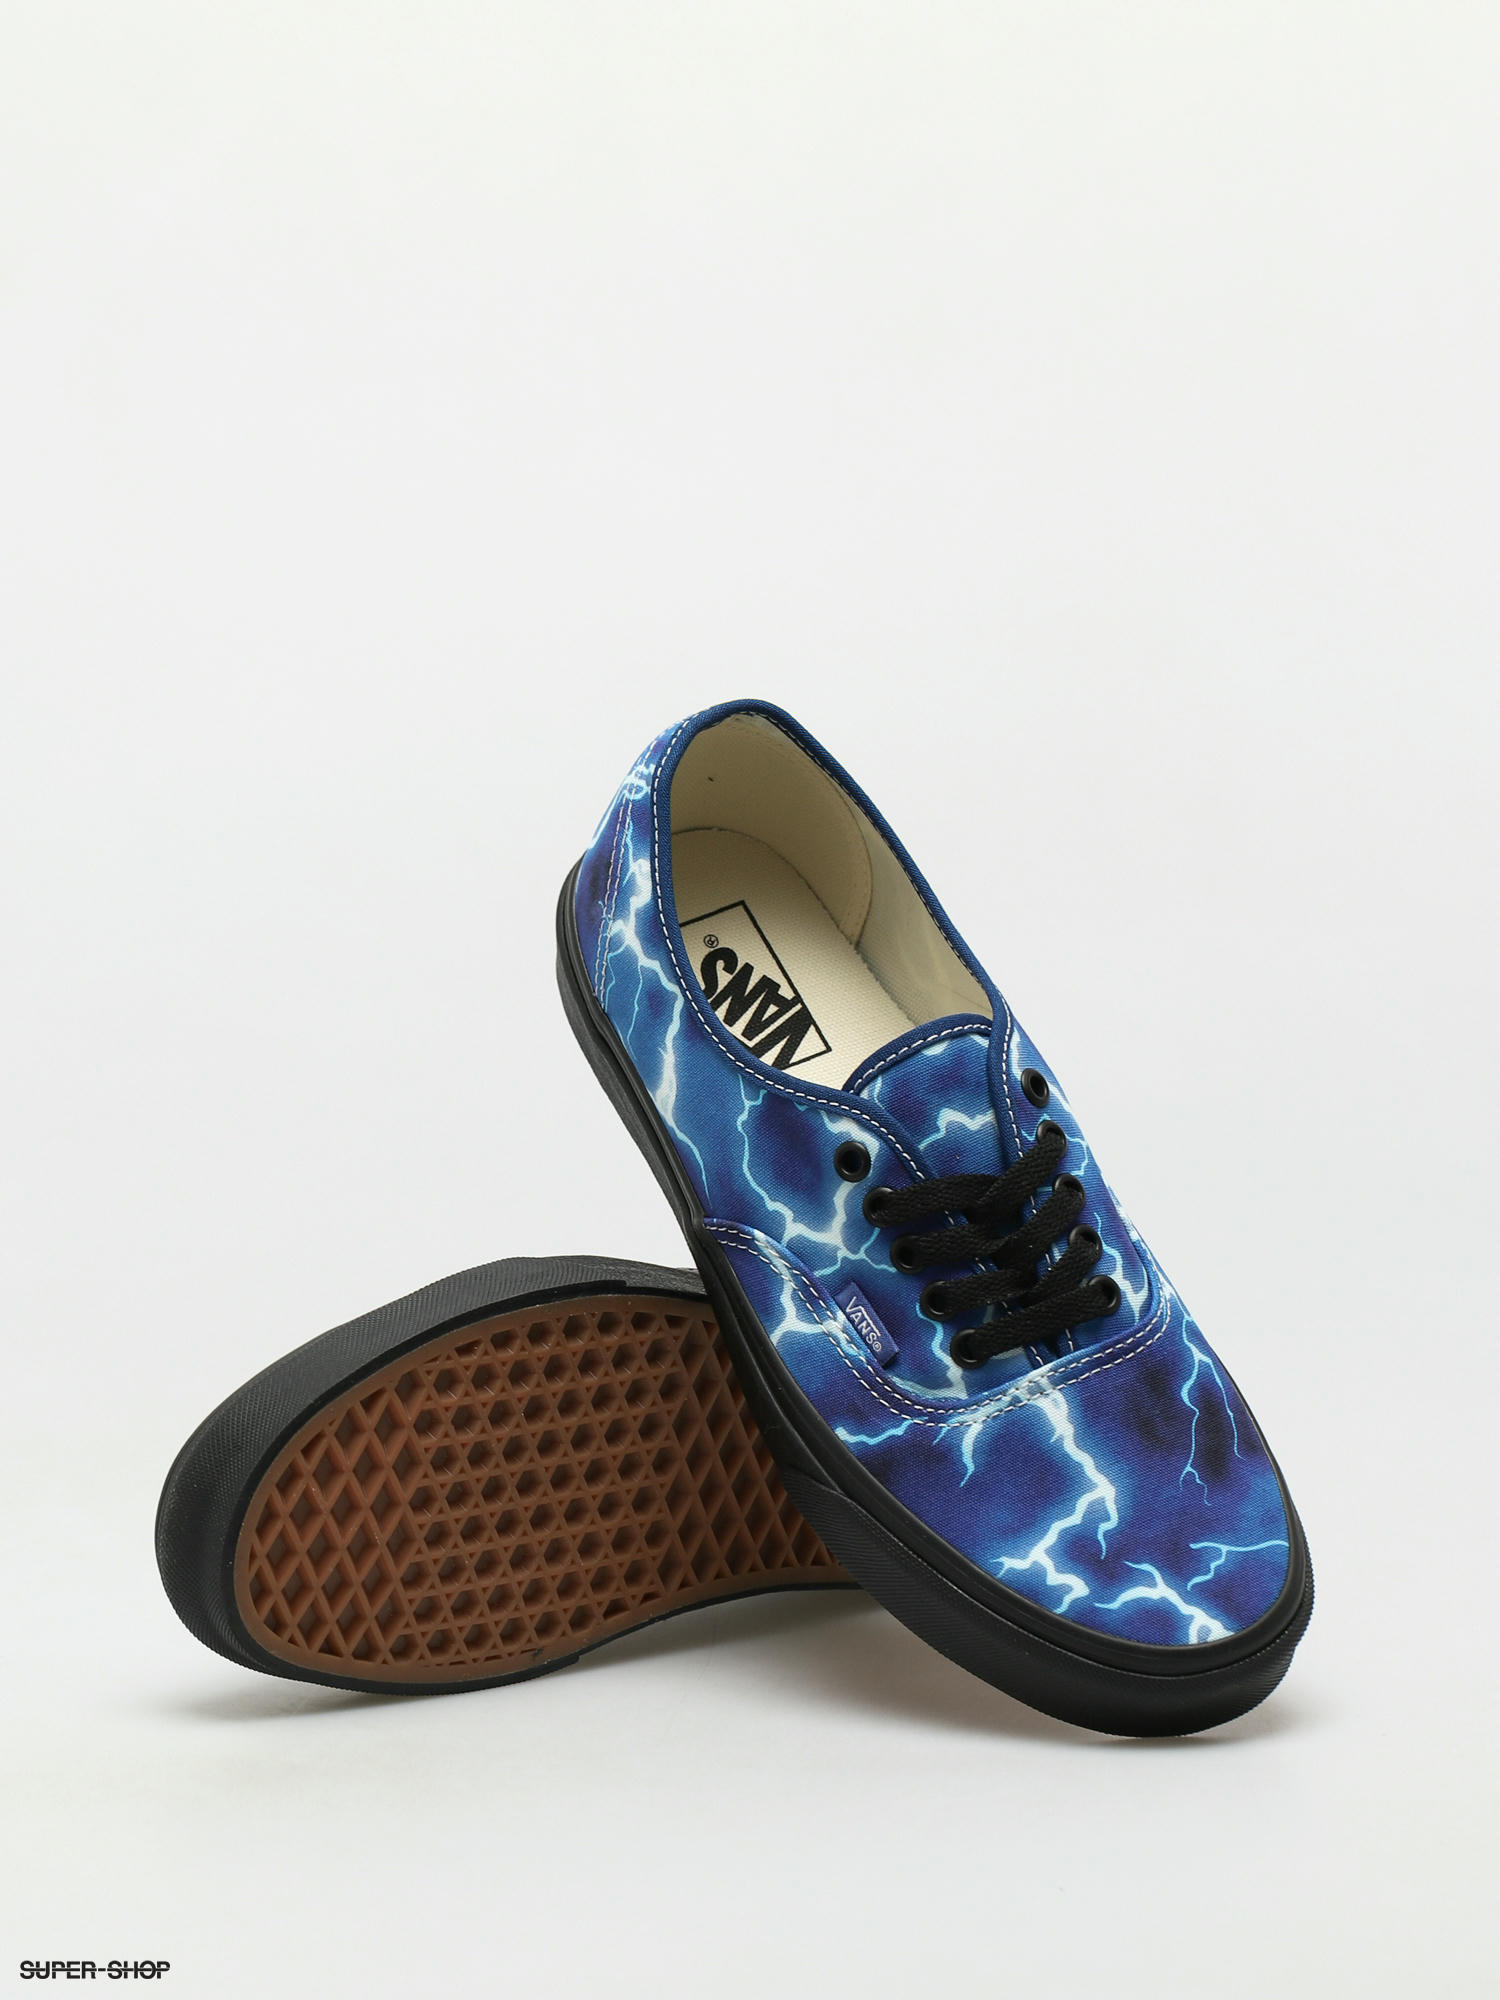 Vans Authentic Lightning Black/Blue Men's Classic Skate Shoes Size 11